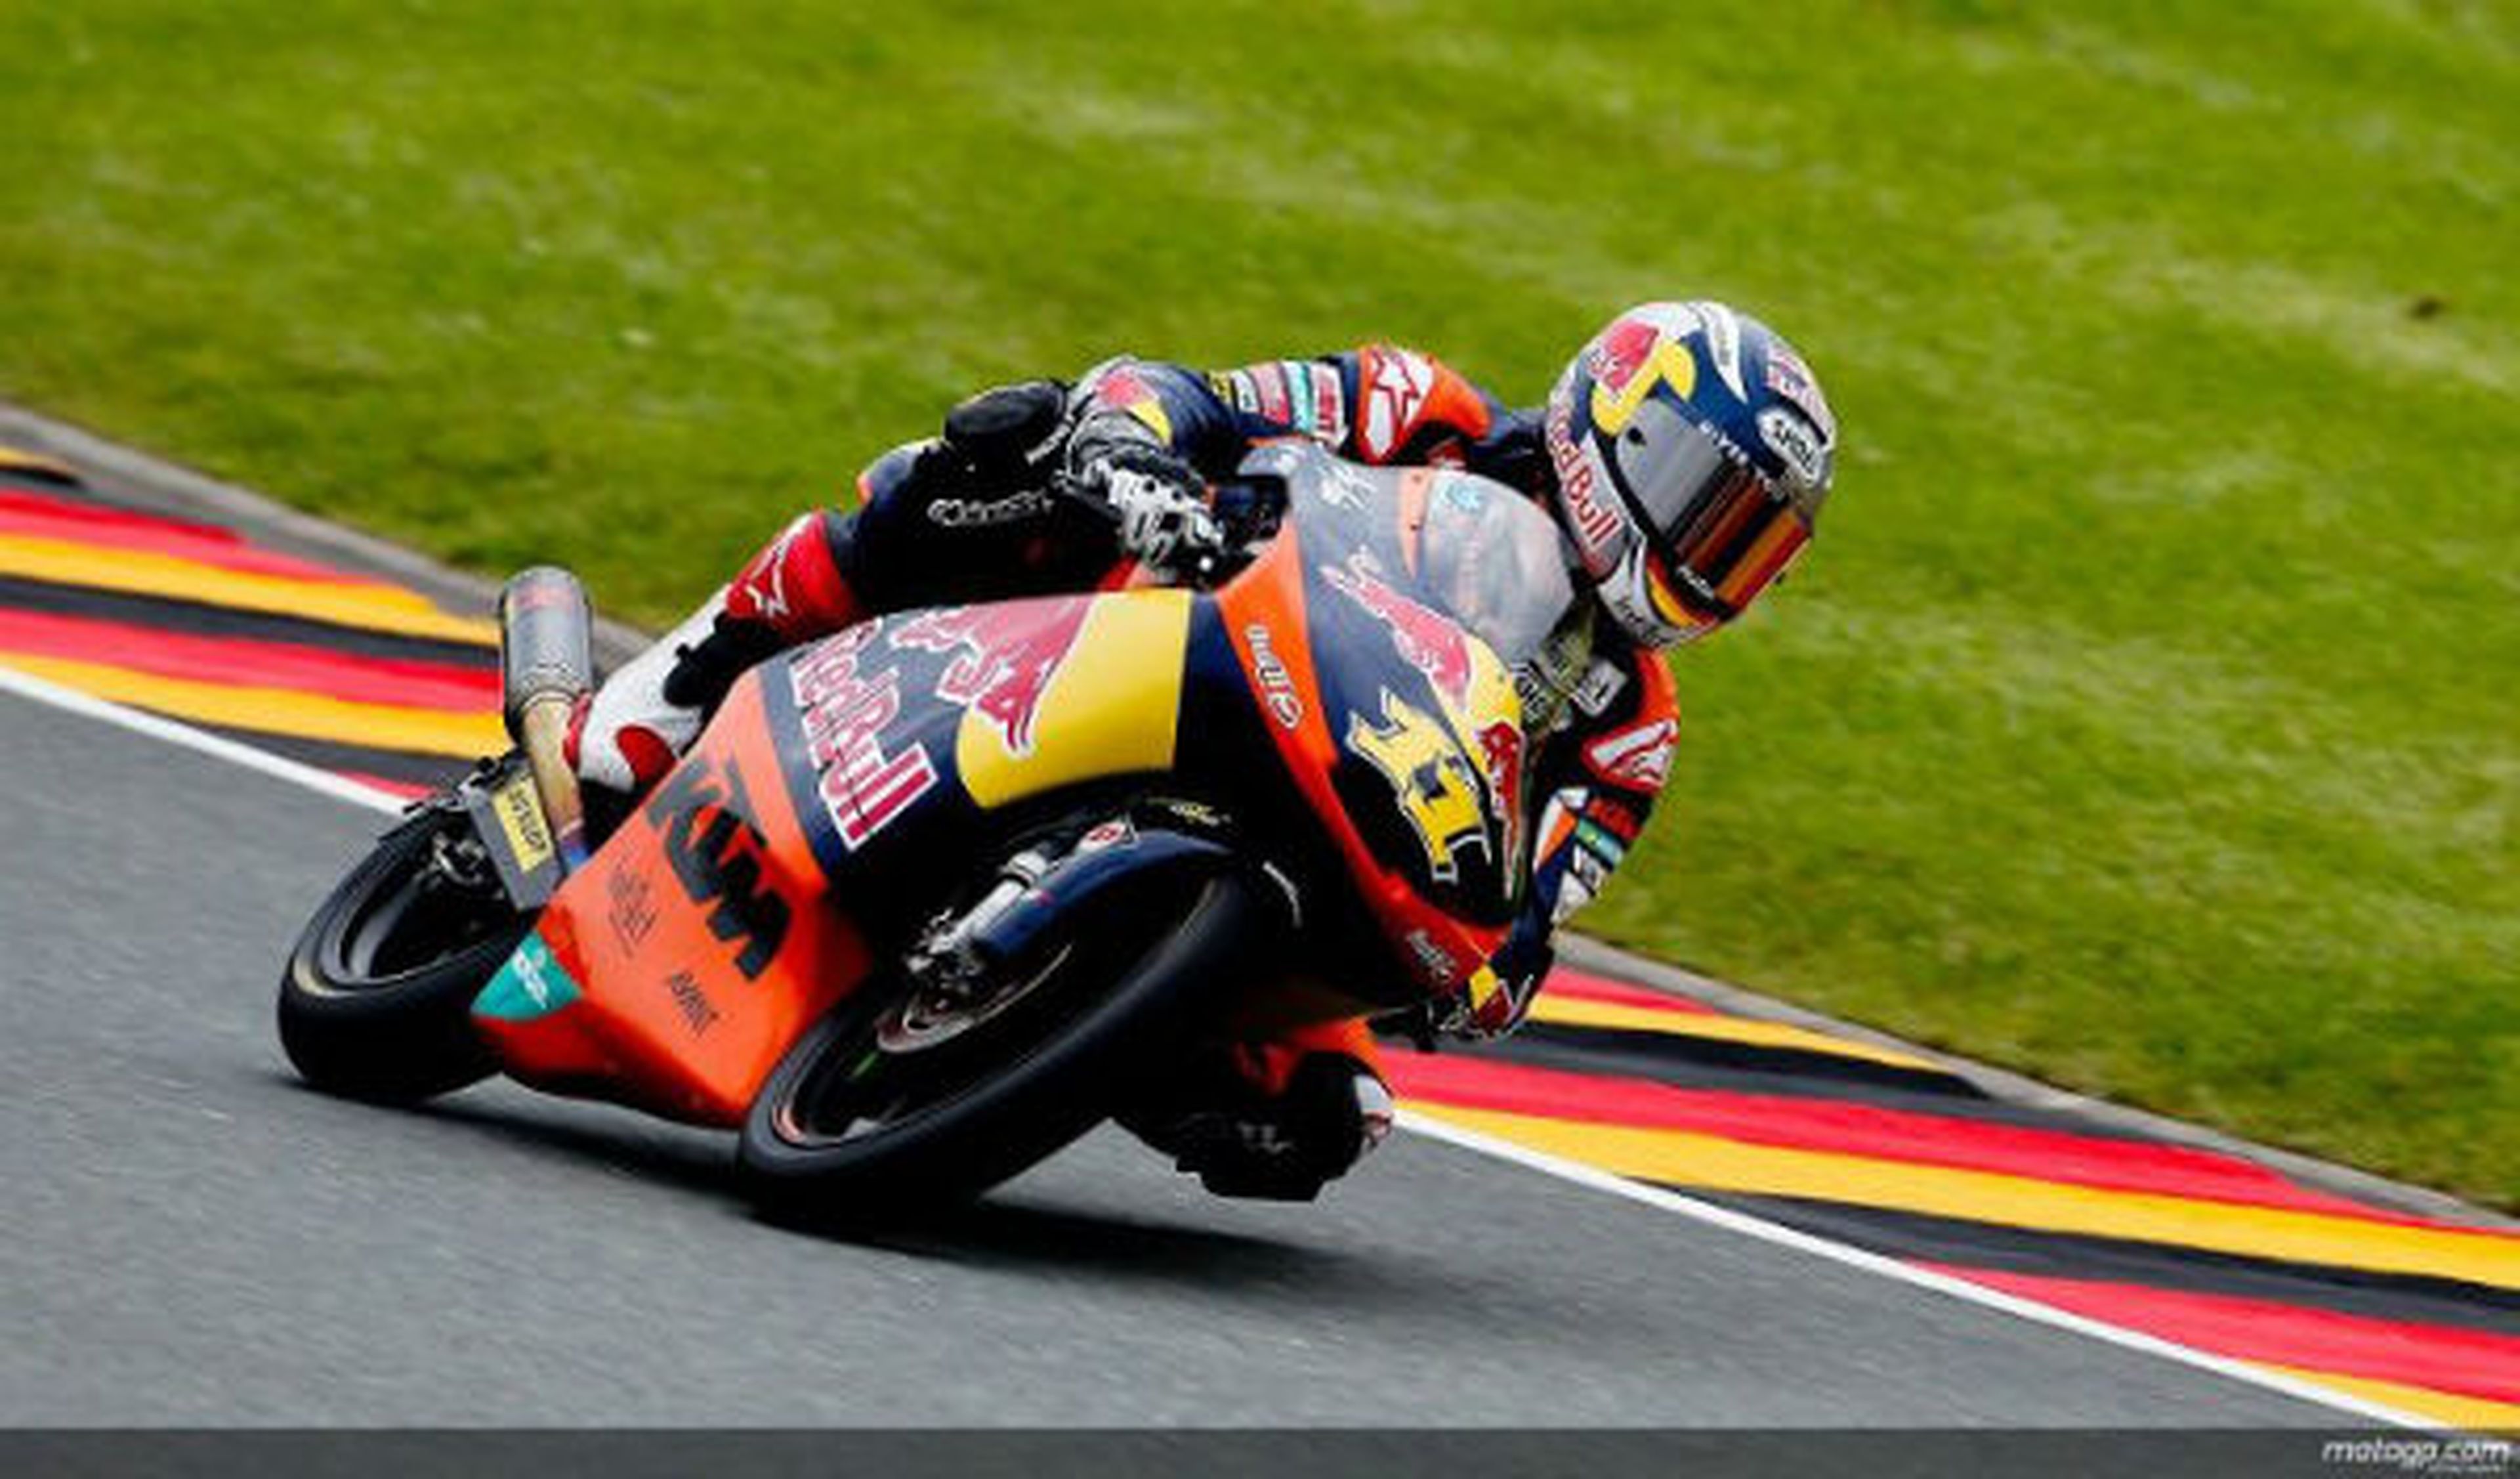 GP de Alemania 2012: Cortese gana y es nuevo líder de Moto3